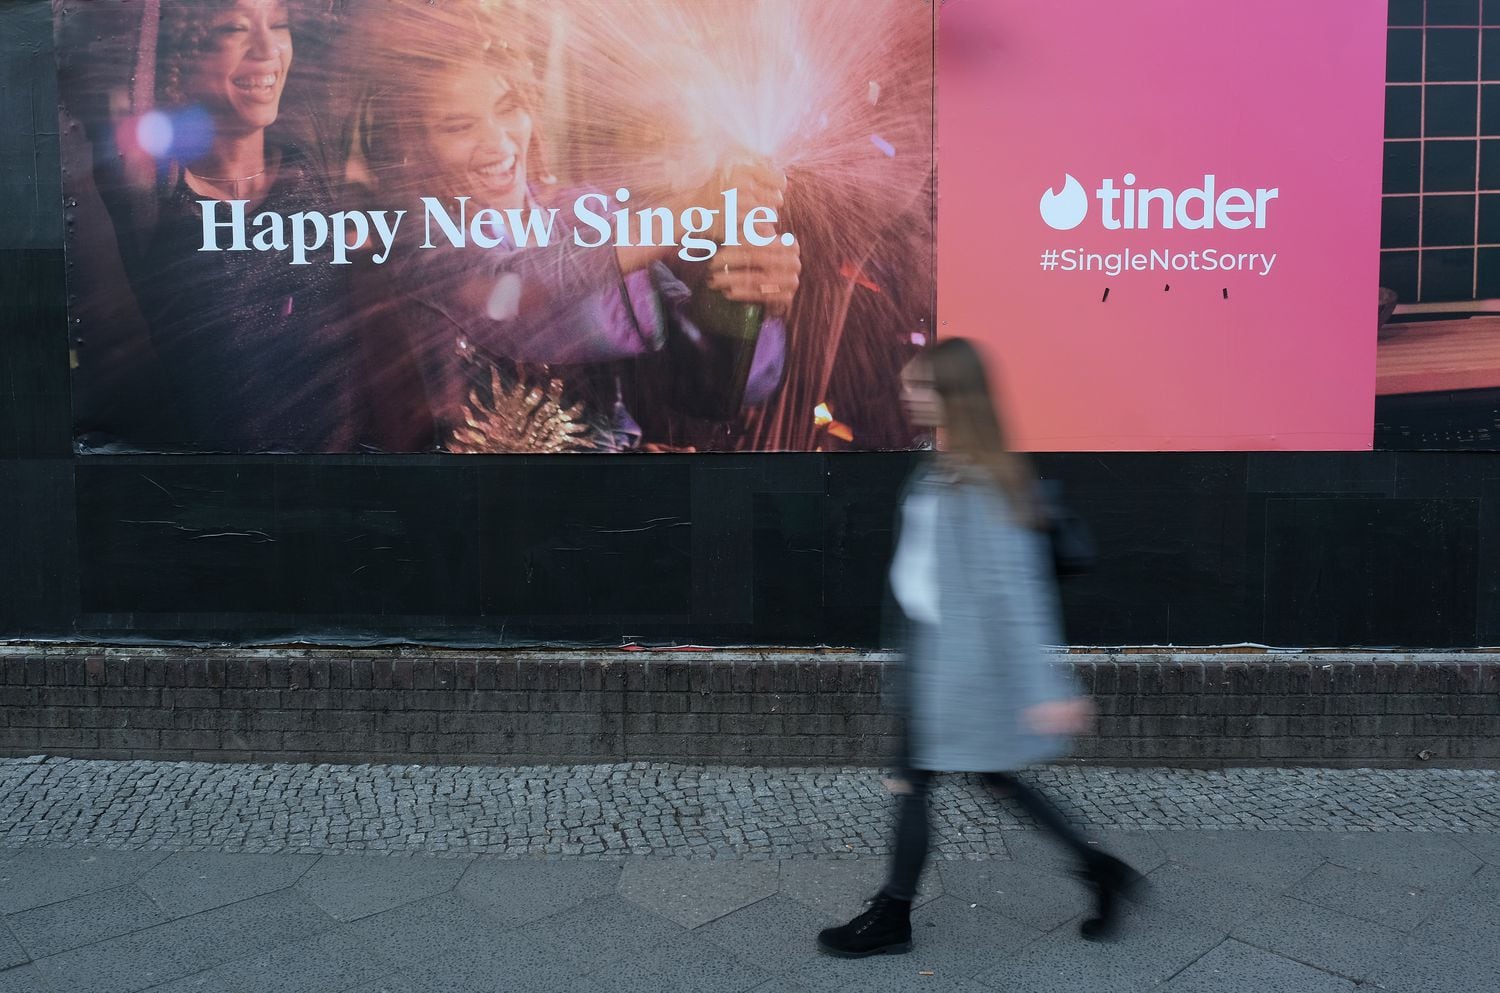 Una mujer pasa por delante de un anuncio de la aplicación de citas Tinder.